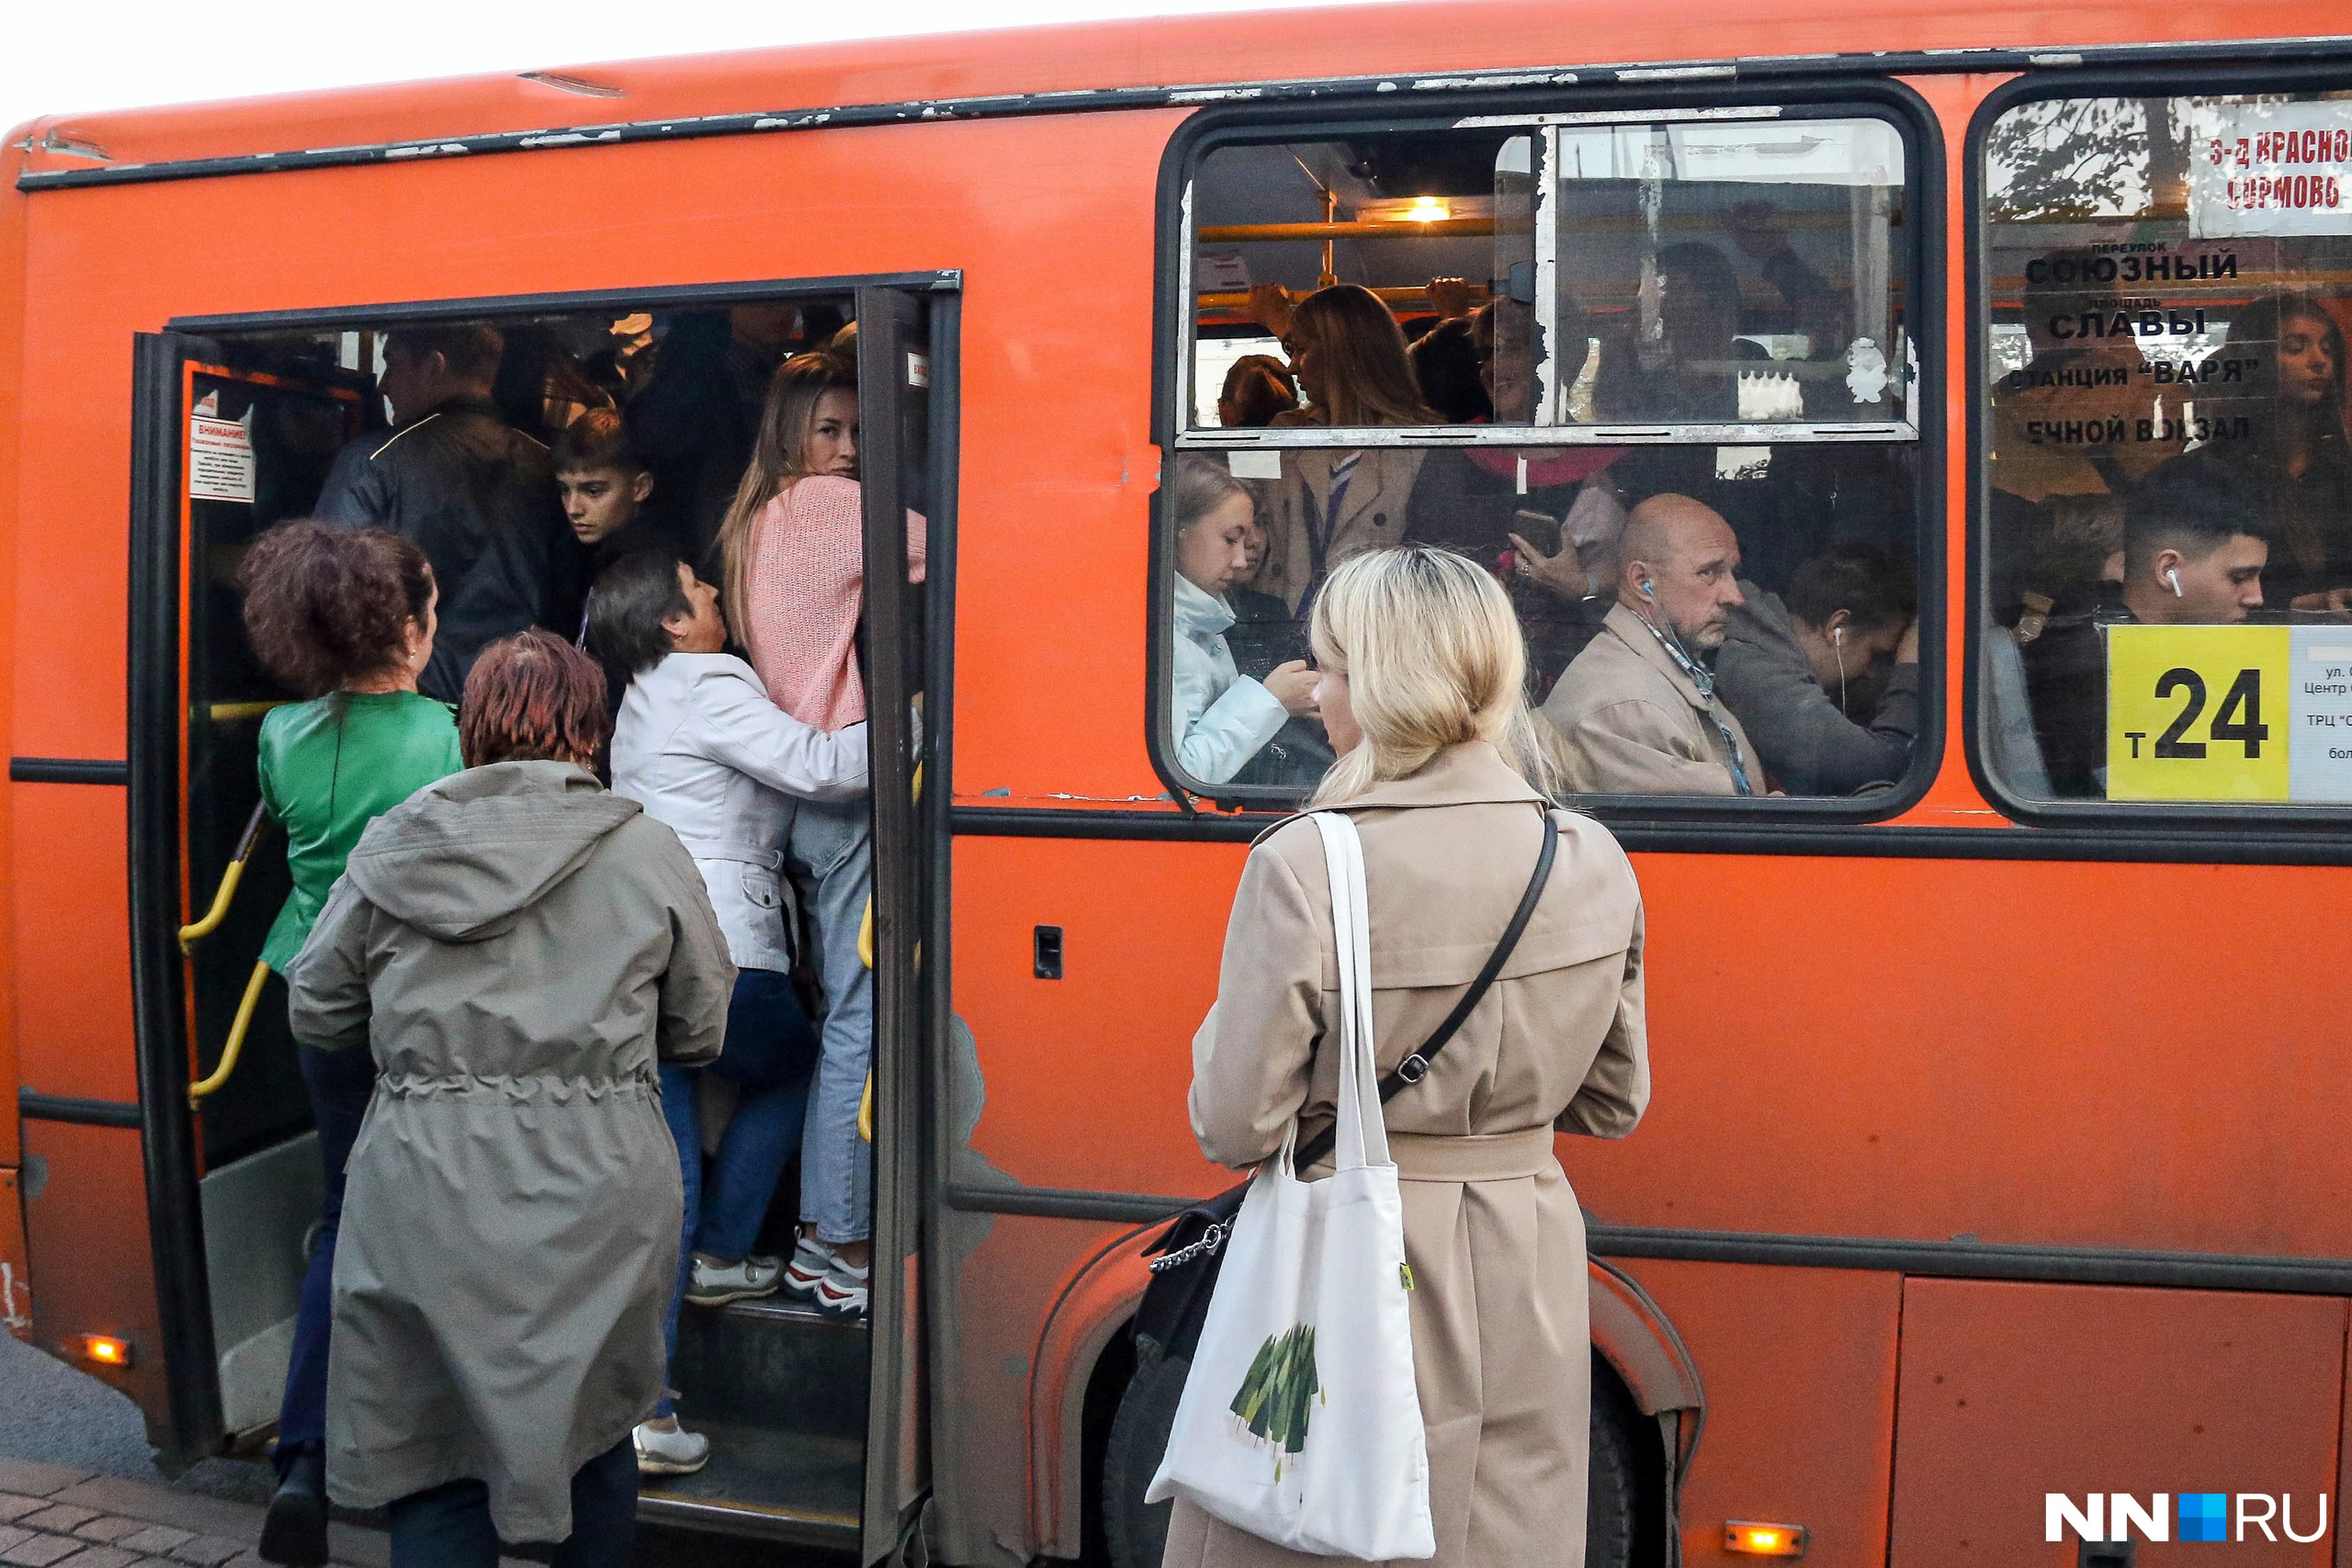 Как будет работать общественный транспорт Нижнего на Пасху? Рассказываем обо всех изменениях